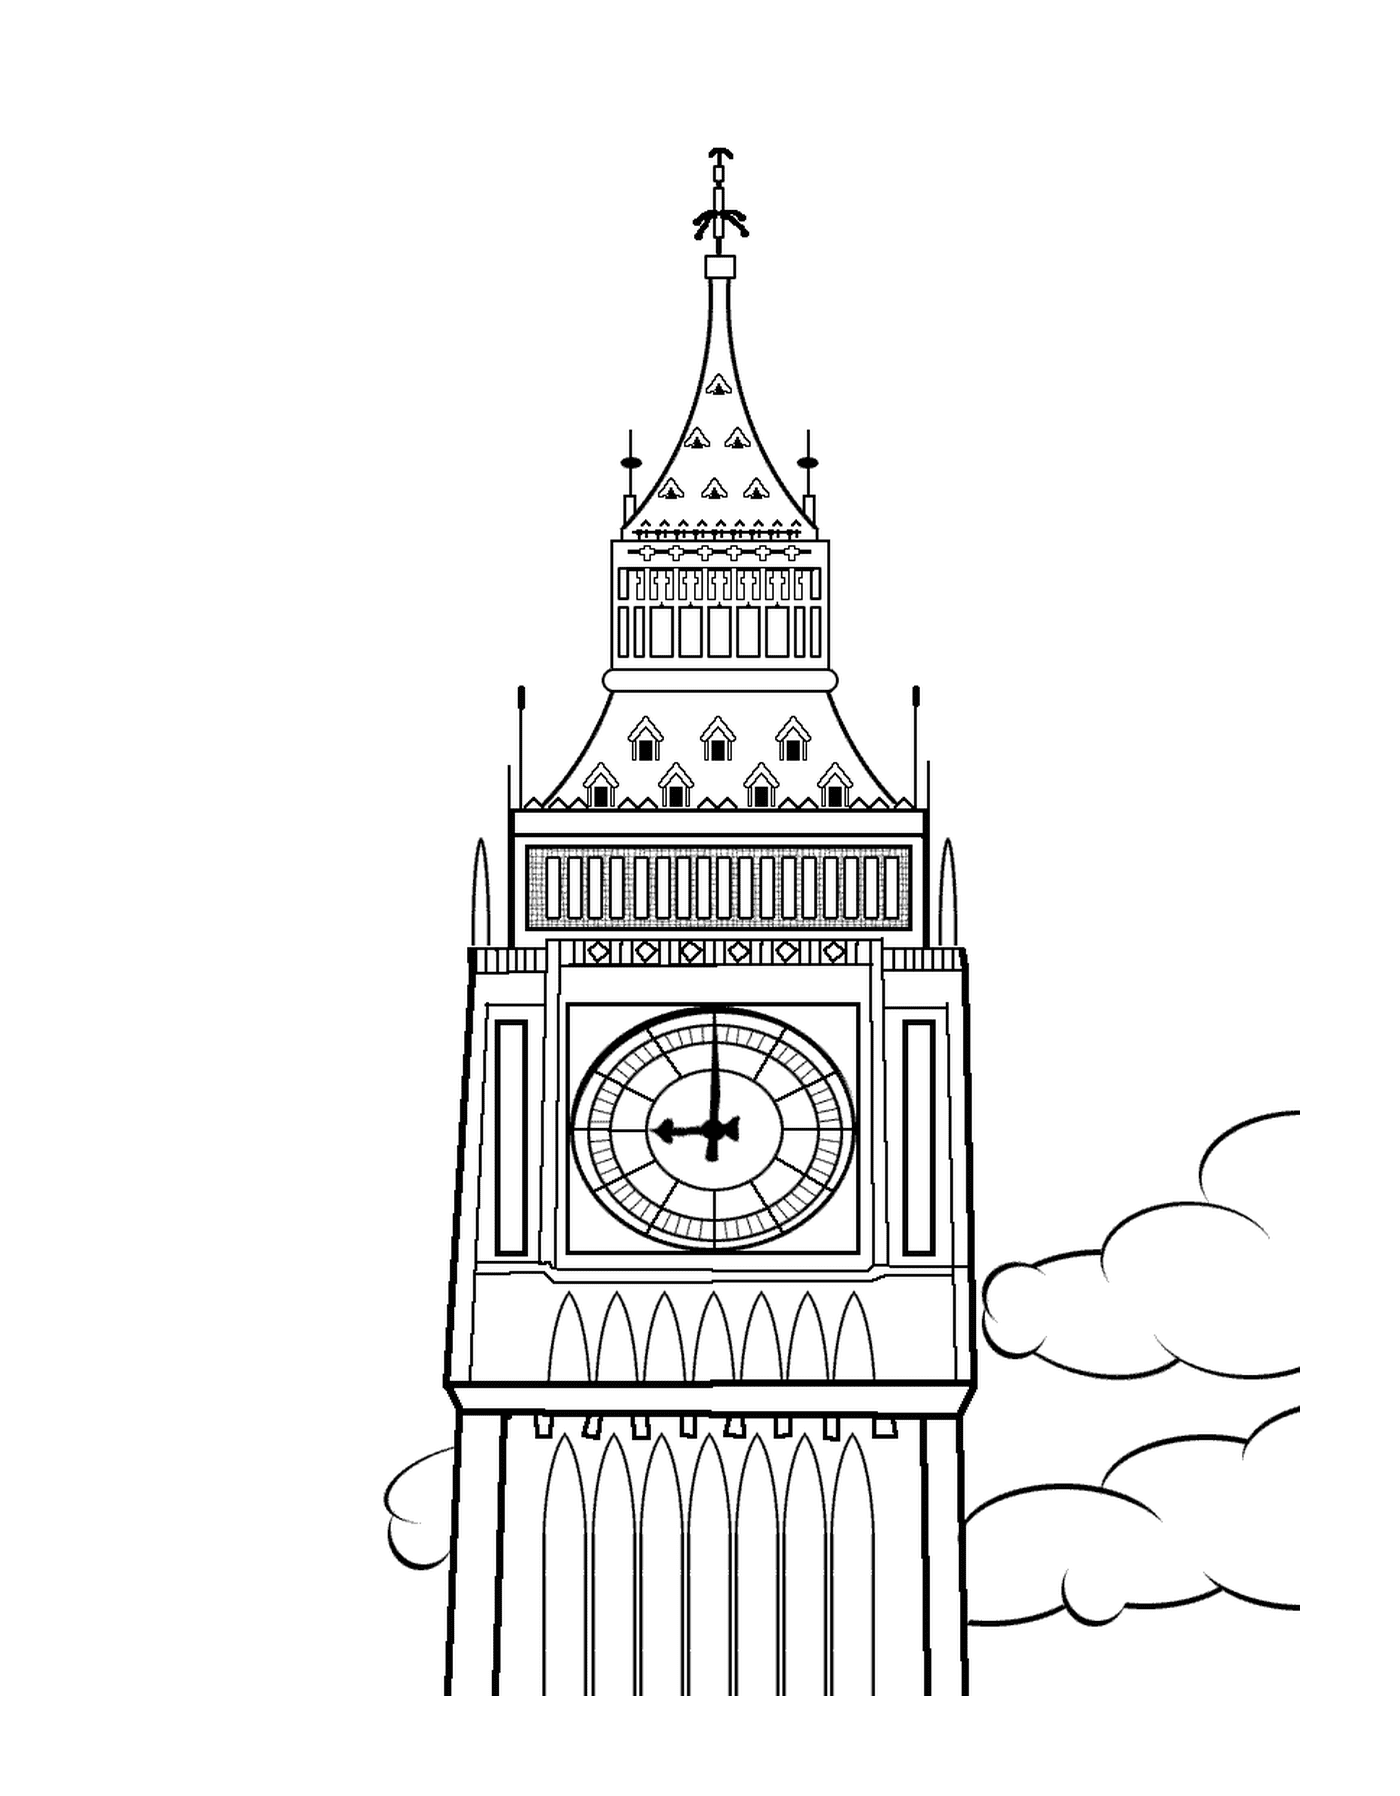  वेस्टमिनस्टर के महल की टावर घड़ी का शिखर 